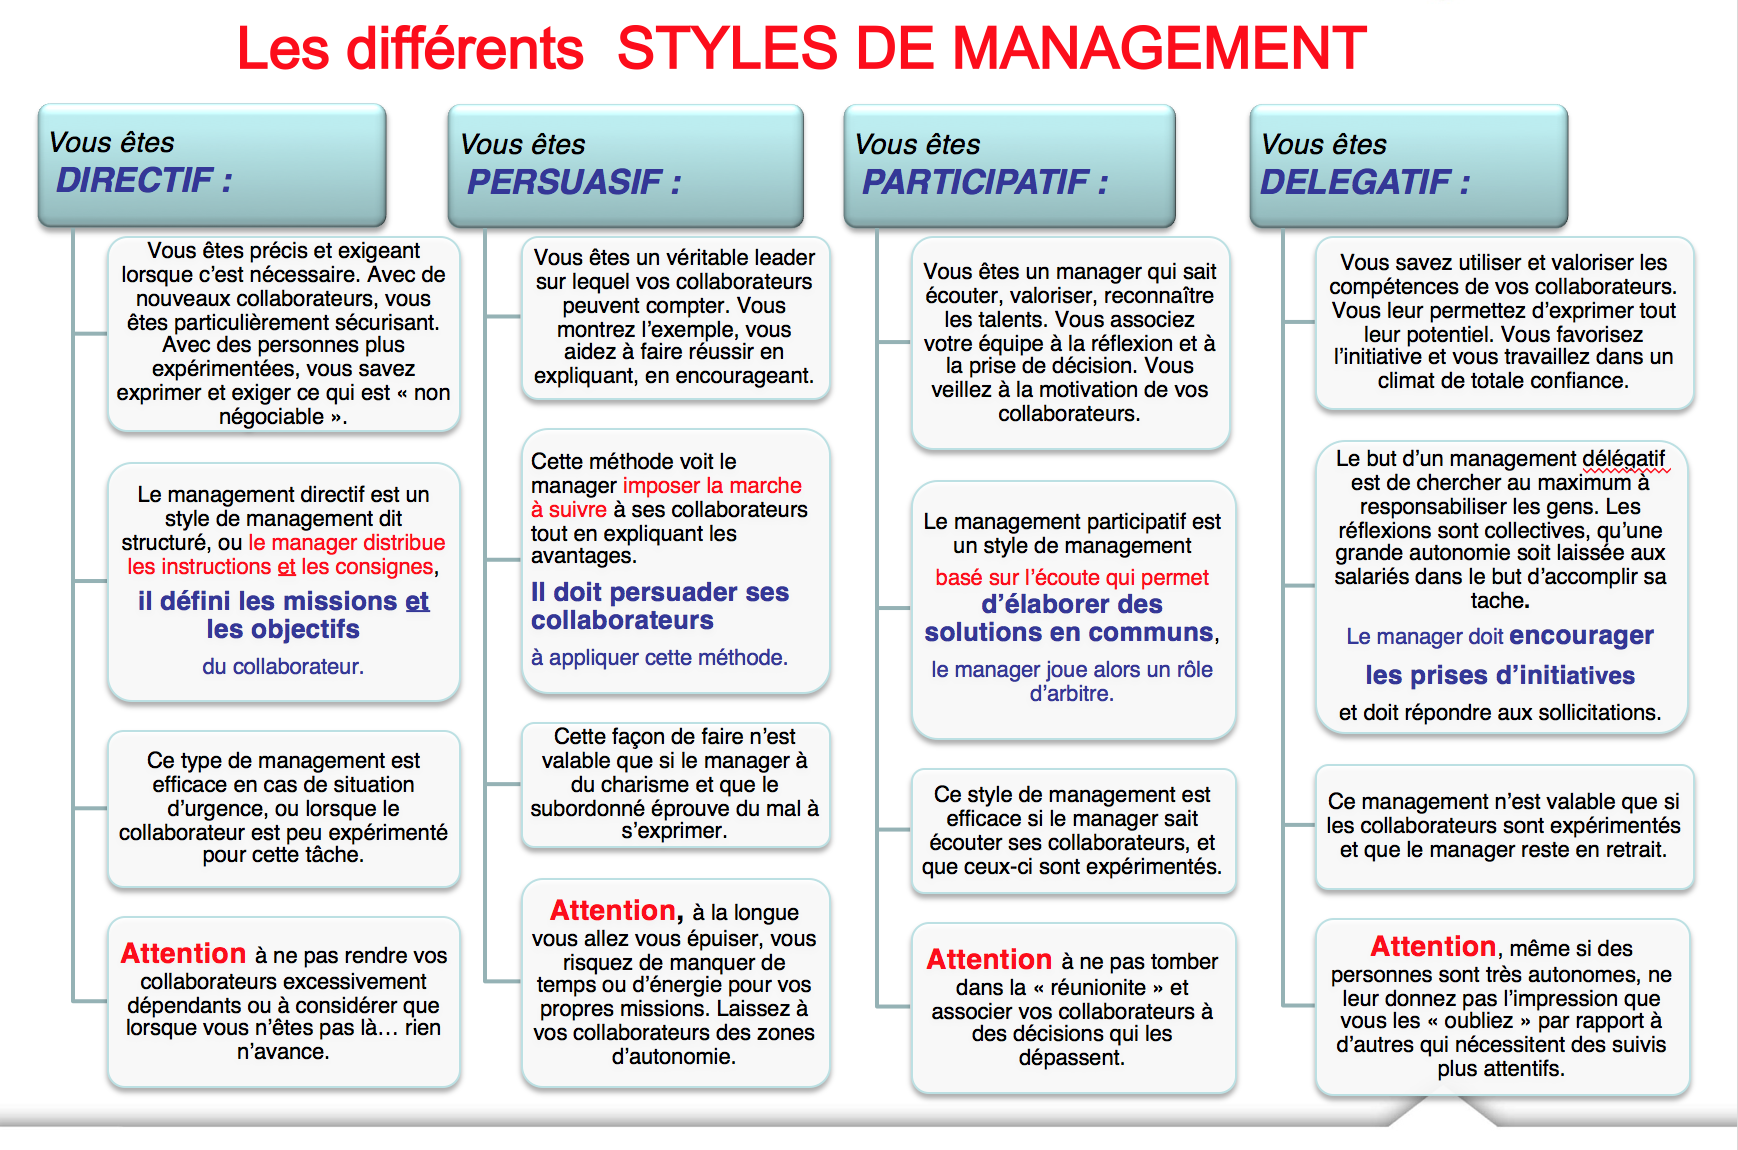 Quels sont les 4 styles de management ?